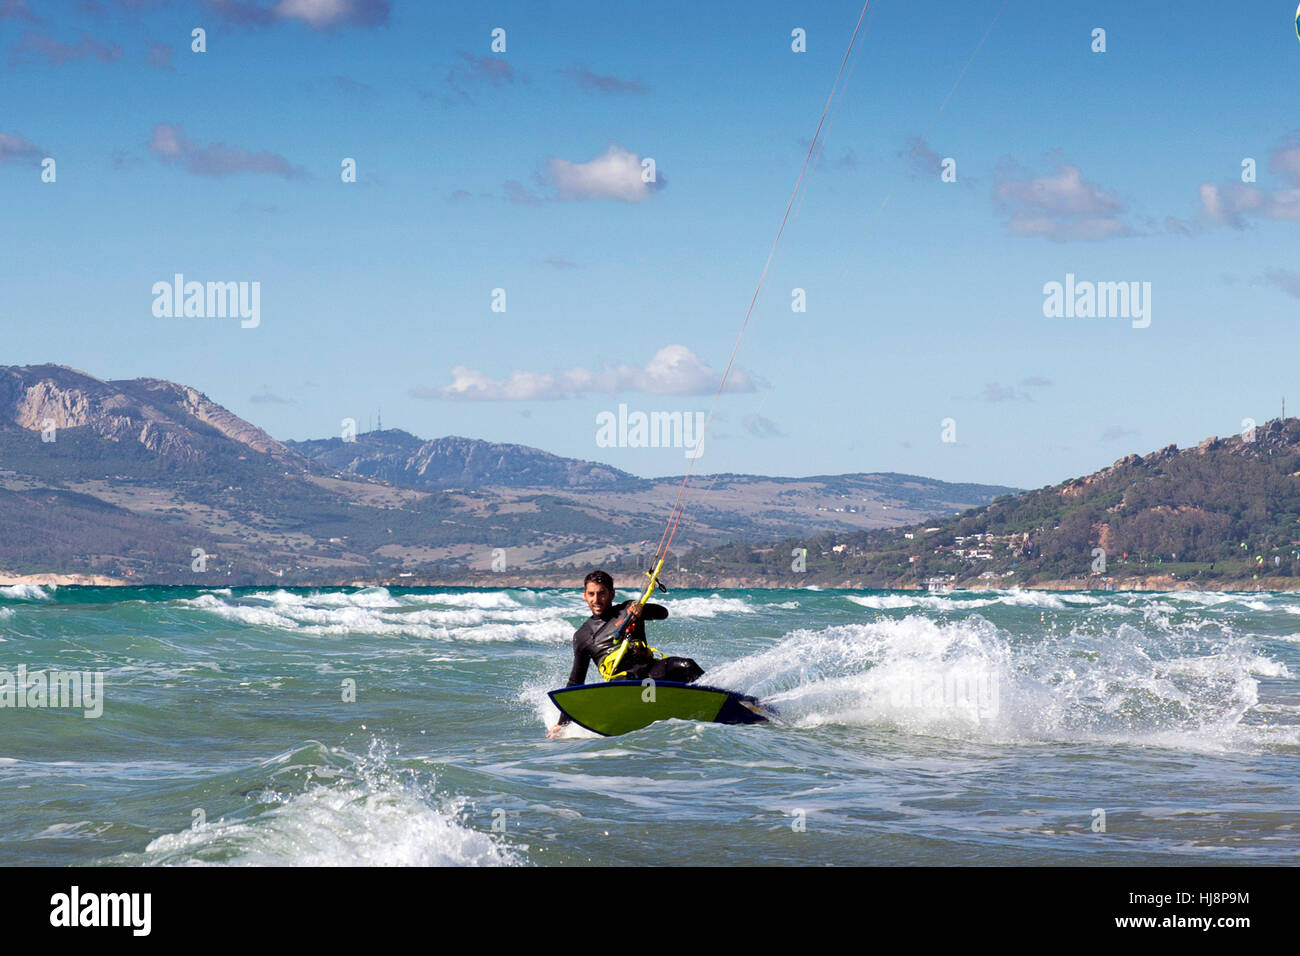 Le kitesurf avec hematite homme surfboard, Los Lances, Tarifa, Cadix, Andalousie, Espagne Banque D'Images